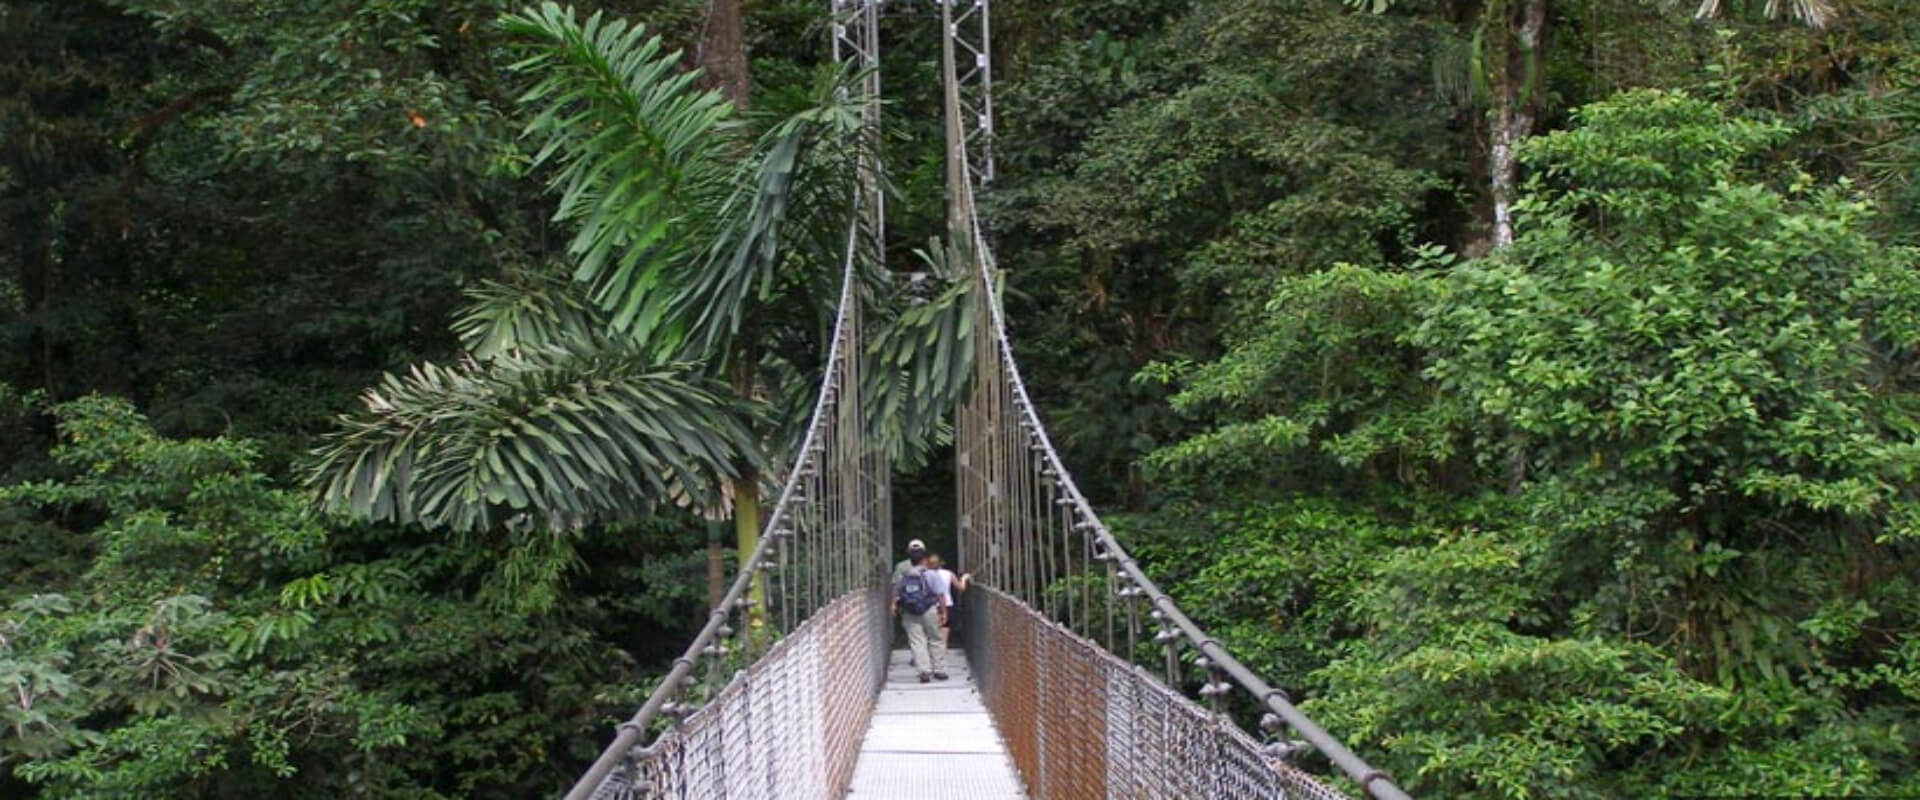 Caminata por los puentes colgantes del Parque Místico | Costa Rica Jade Tours